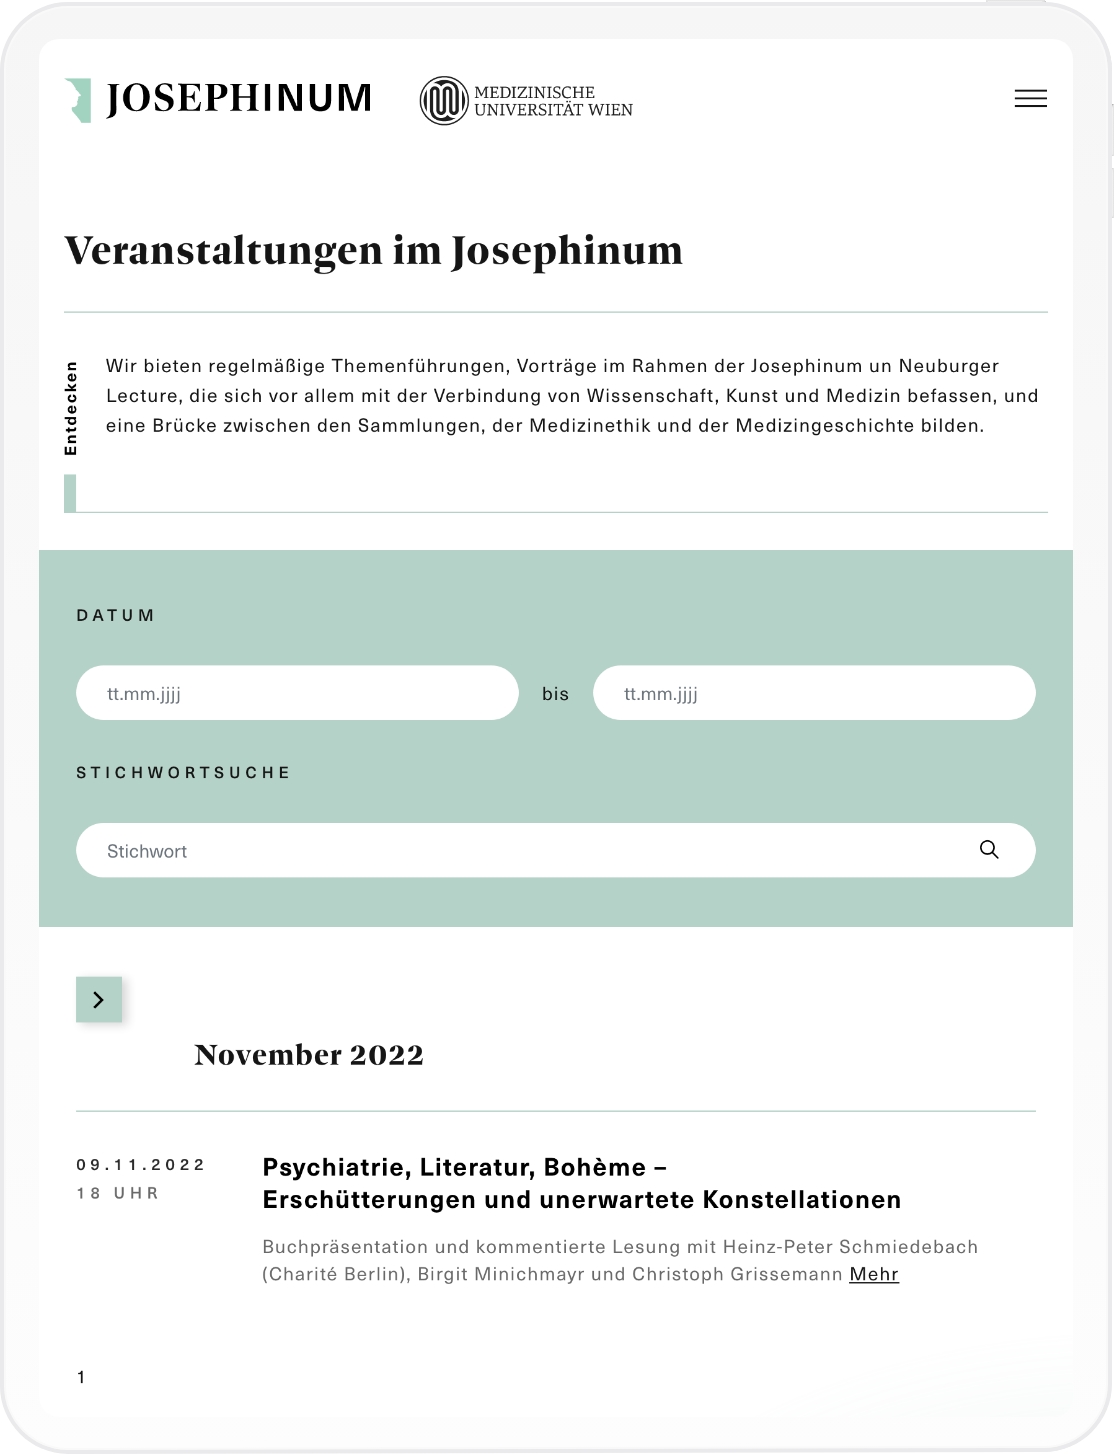 Mockup der Veranstaltungen auf der Josephinum Website in Tablet Auflösung